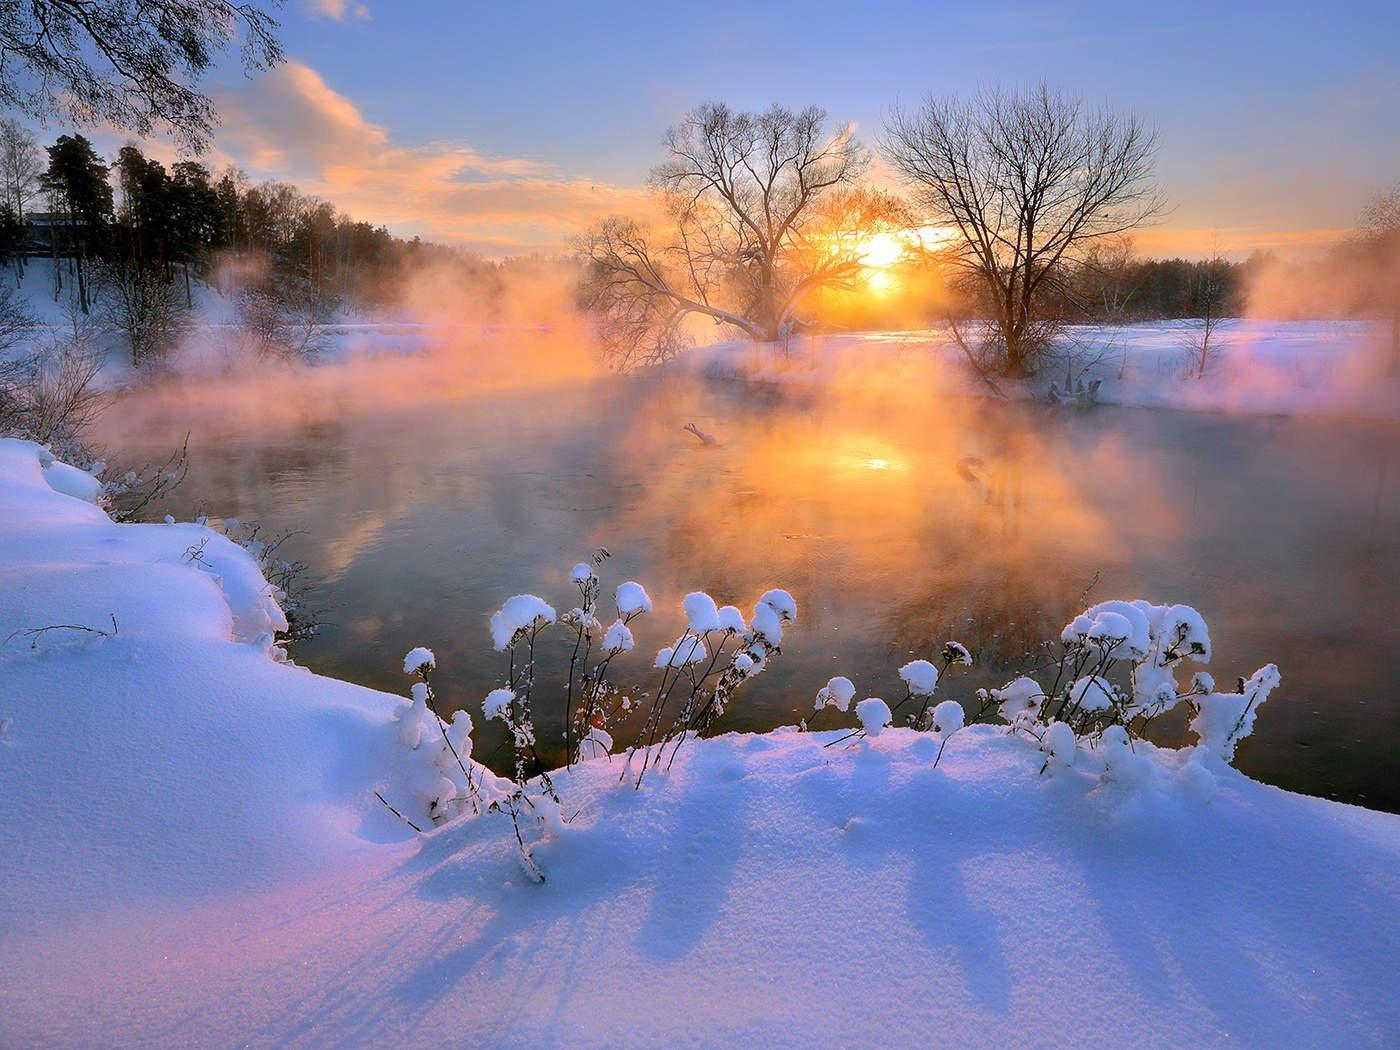 Доброе утро открытки красивые зимние сказочные - 66 фото